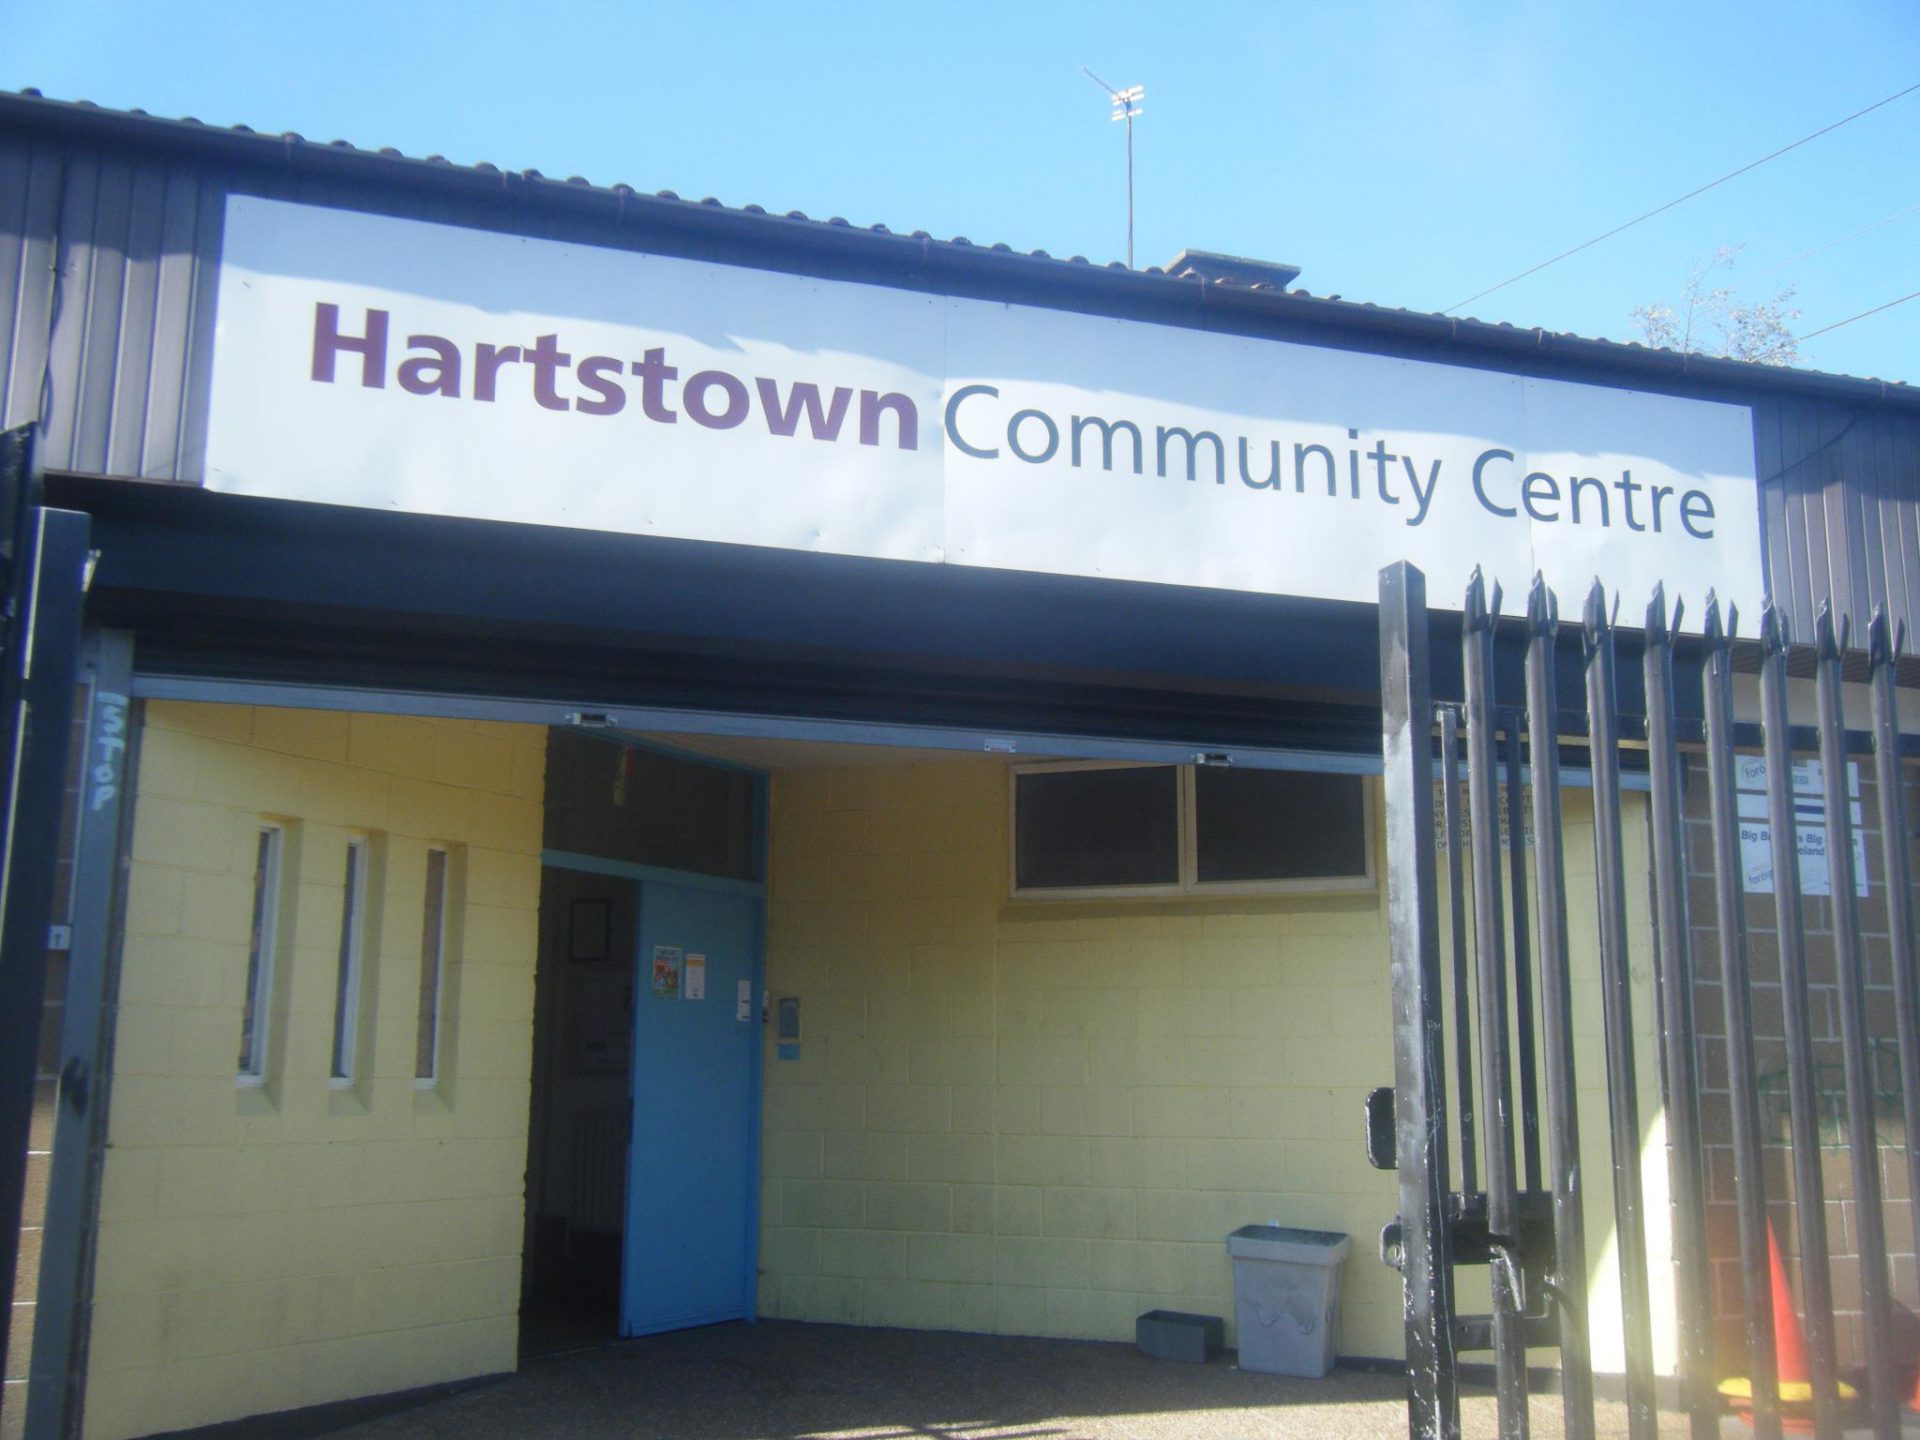 Hartstown Community Centre - building